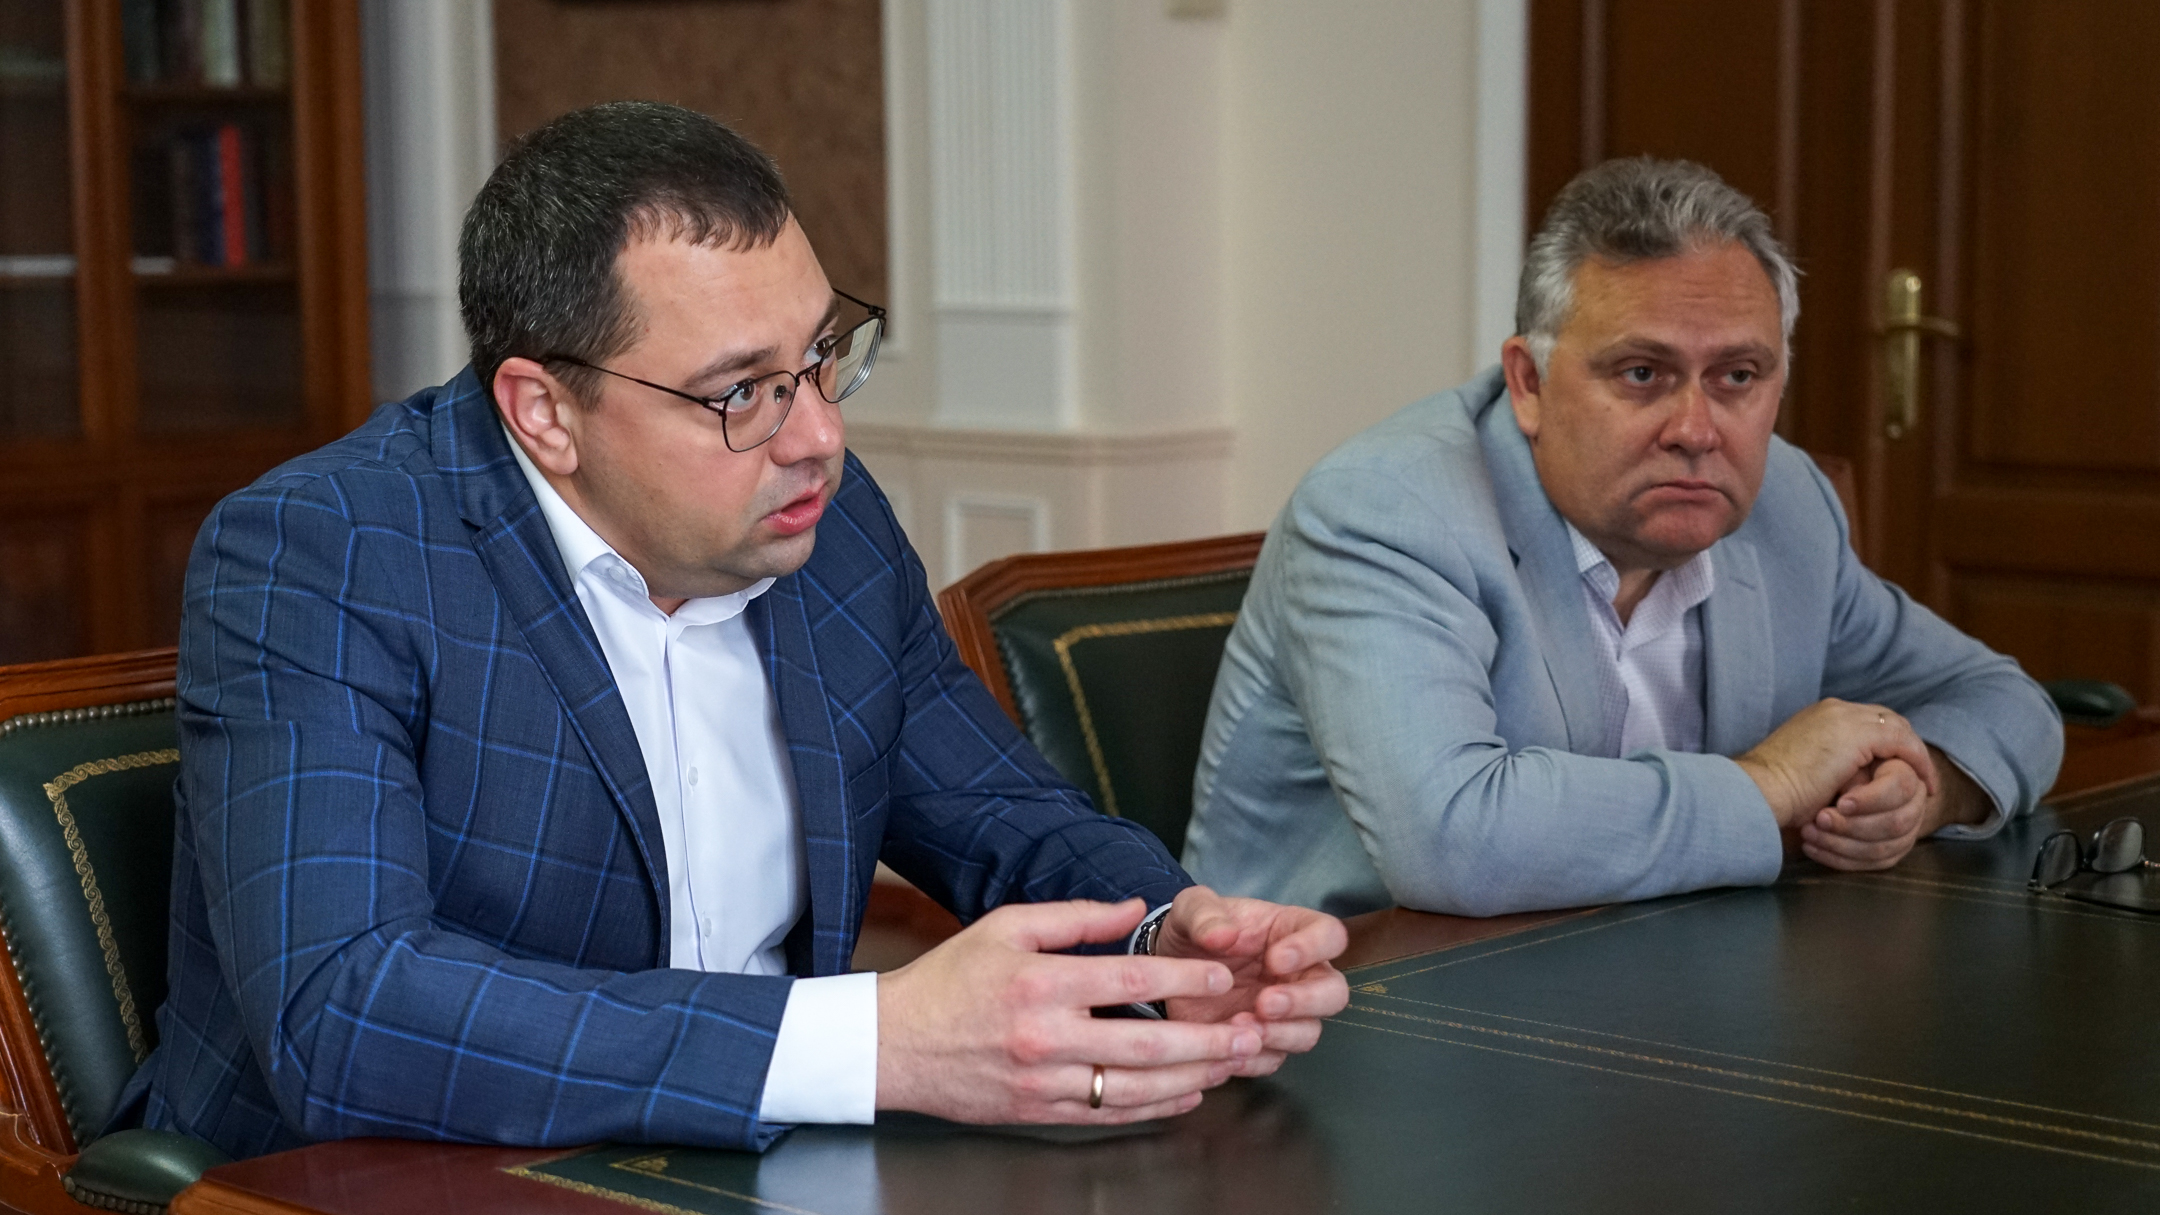 Державинский и региональное Управление Роскомнадзора заключат соглашение о сотрудничестве фото анонса